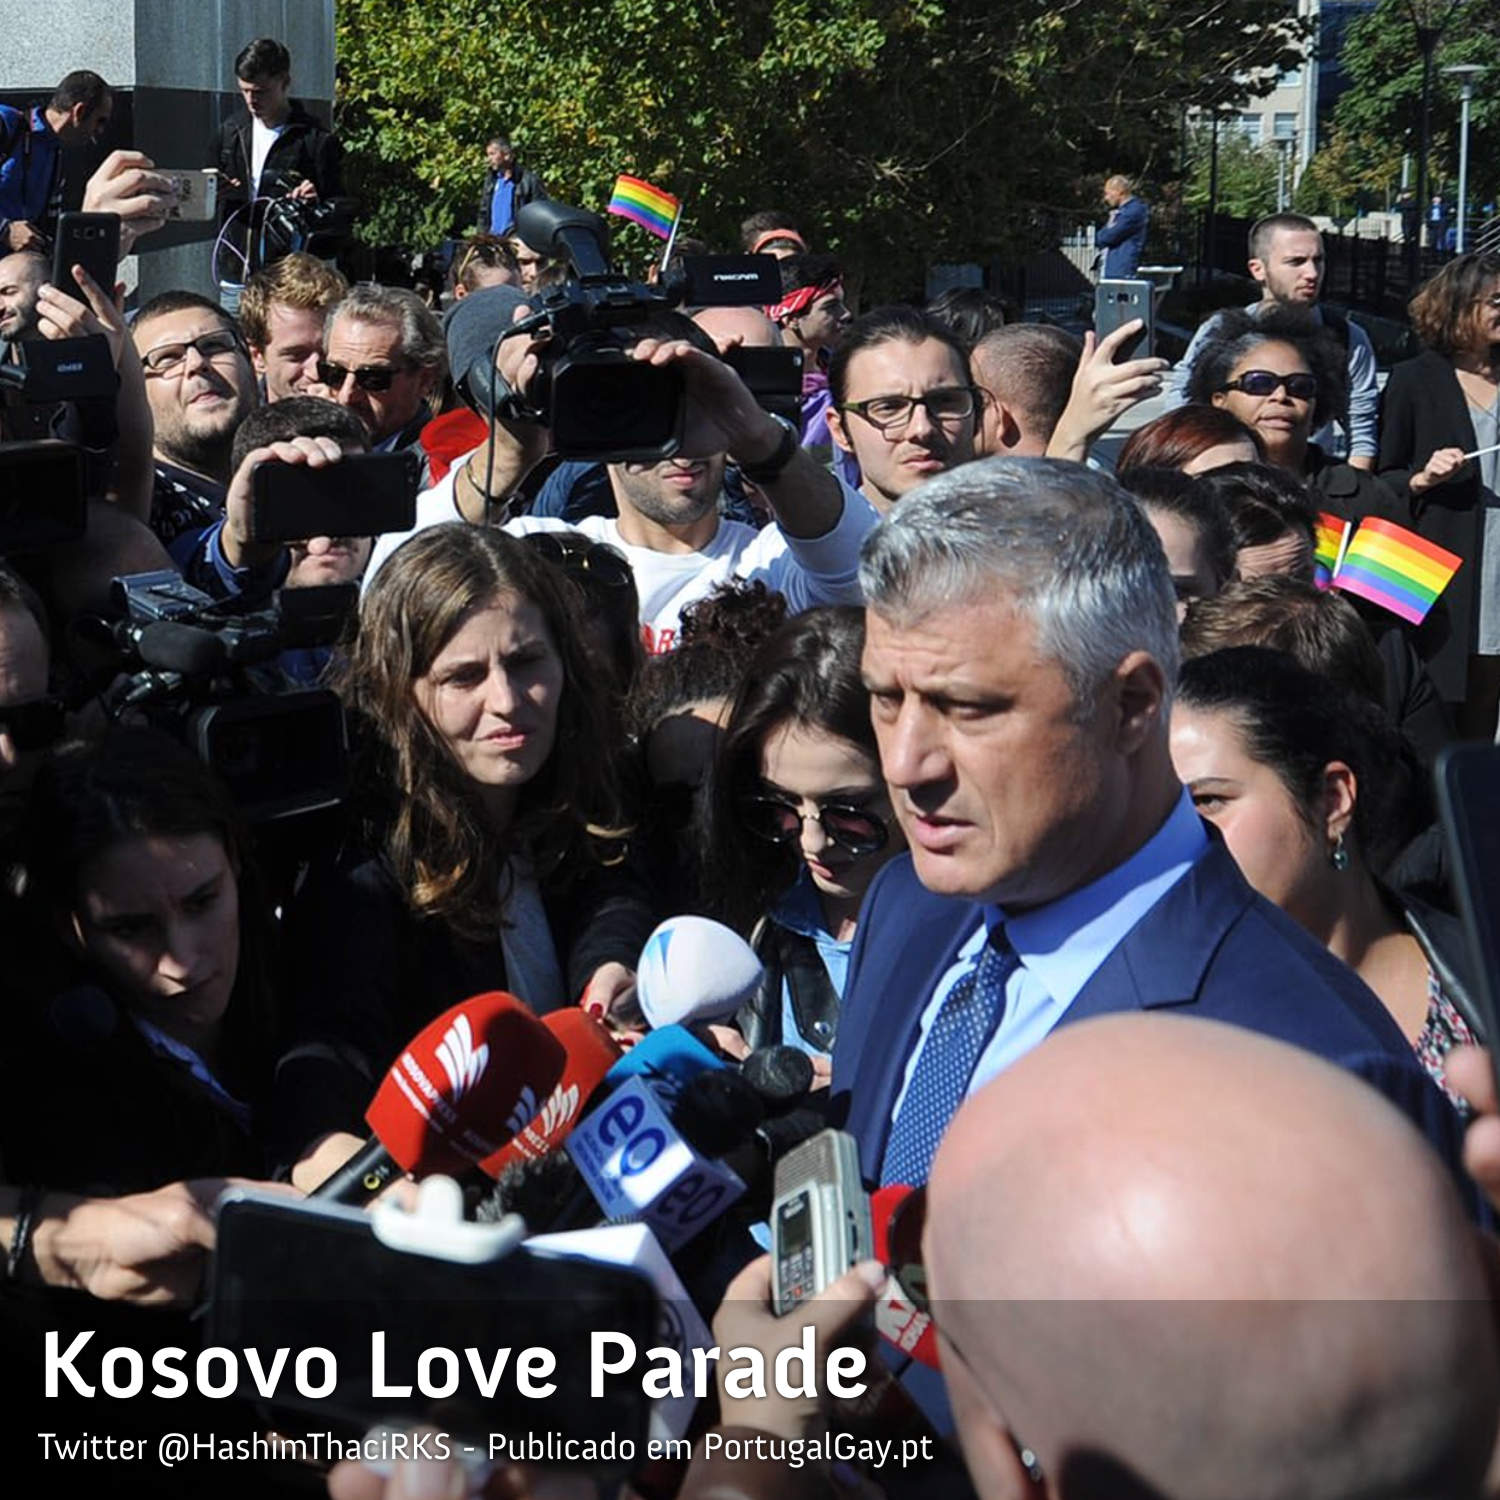 KOSOVO: Pas maioritariamente muulmano com primeiro orgulho LGBT+ oficial e presidente ajuda